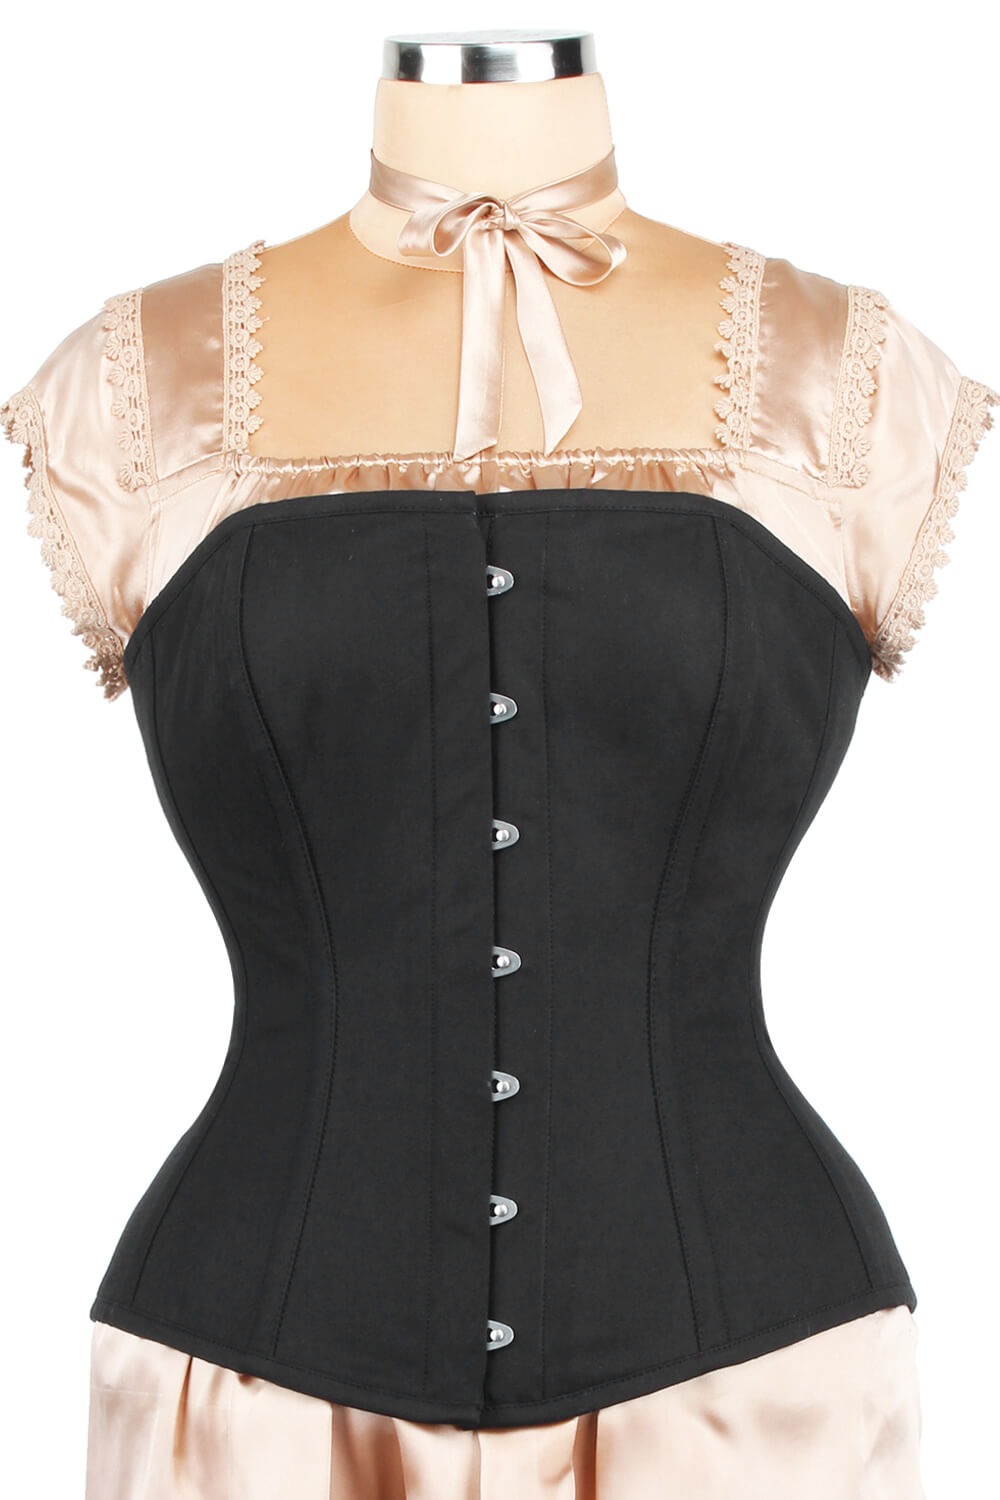 https://www.corsetdeal.com/cdn/shop/products/EL-119_F_Edwardian_Custom_Made_Long_Line_Cotton_Corset_ELC-401_7199f115-2a8e-435f-bf96-bfda76ddcb2d.jpg?v=1679056727